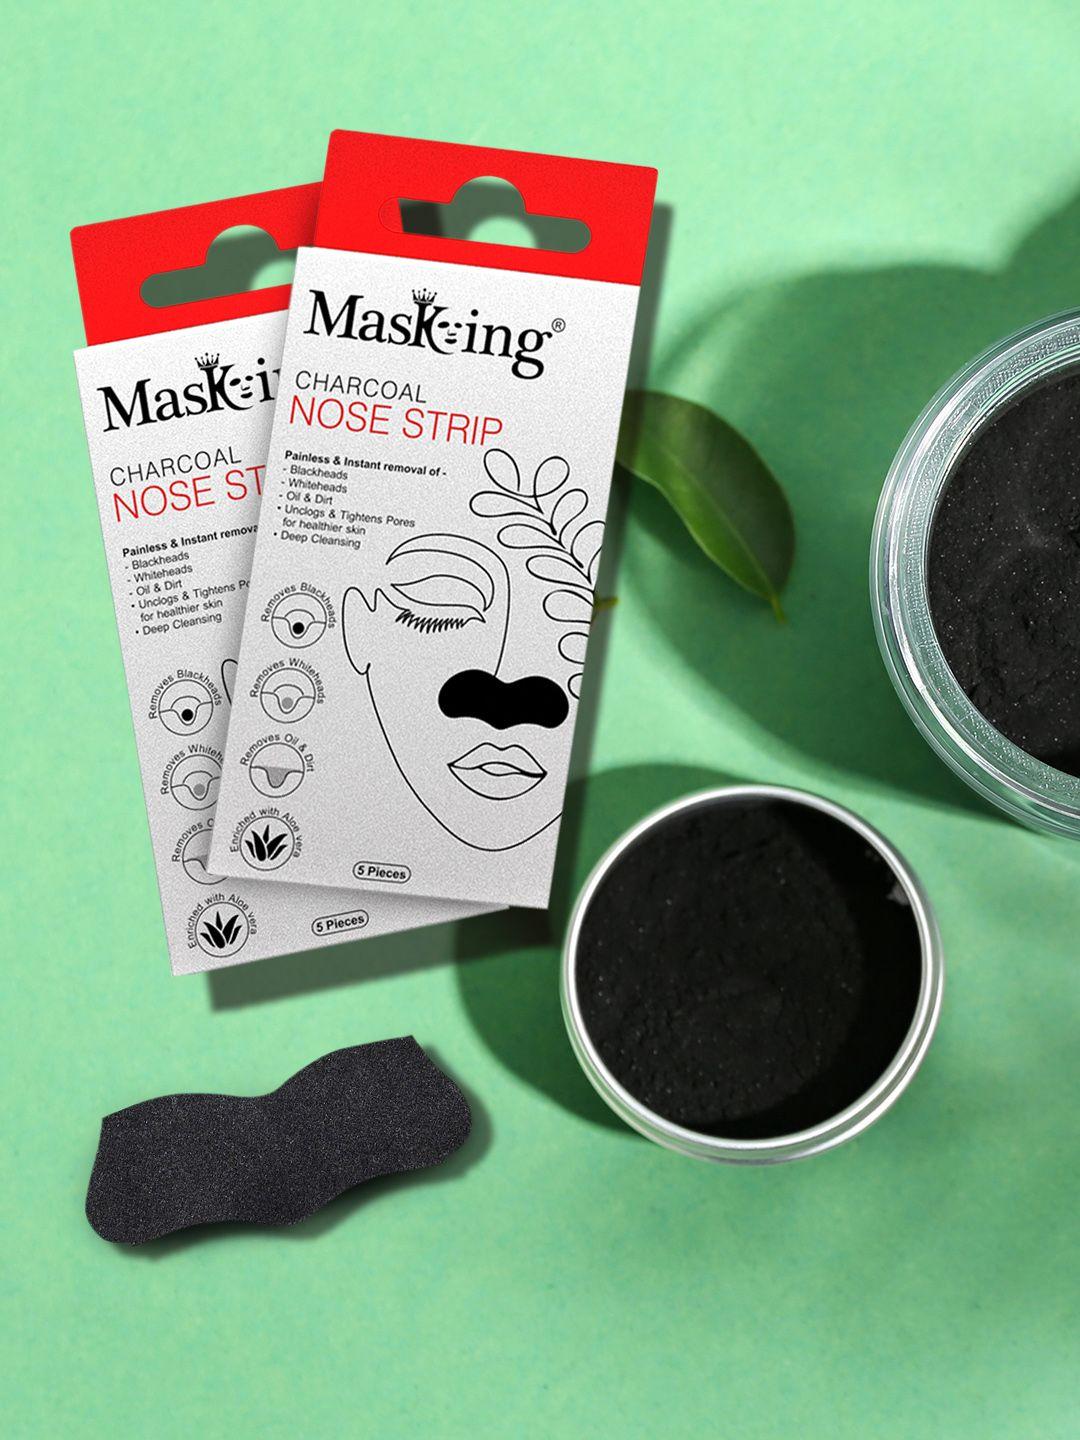 masking set of 2 black charcoal nose stripes